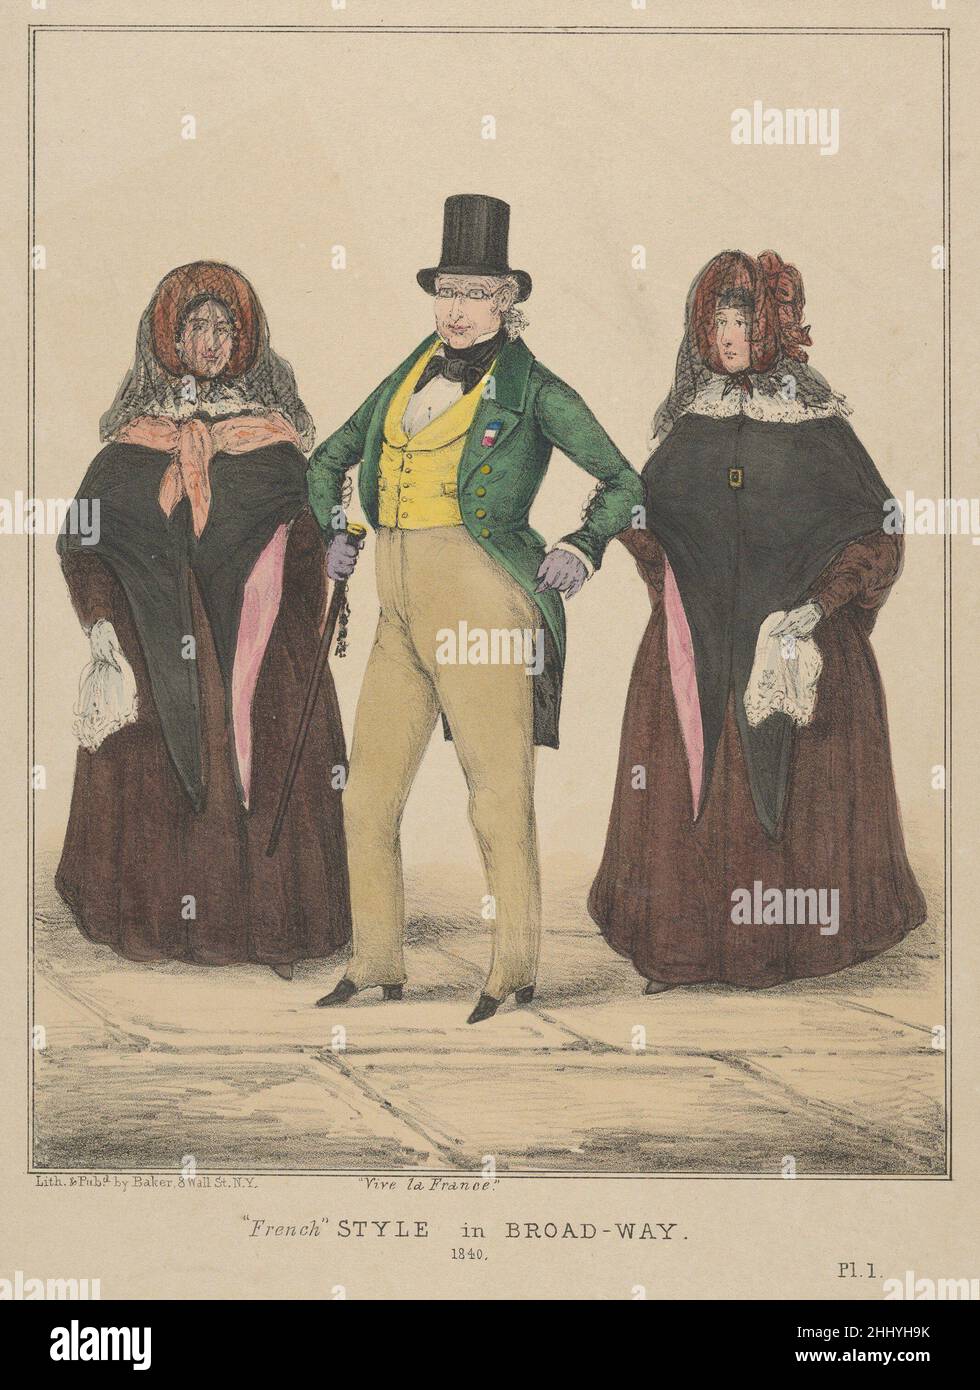 Vive la France, stile 'Francese' a Broadway 1840 Alfred E. Baker American  questa immagine di un dapper gentleman che indossa un cappello e un  cappotto di coda, con nastro sul suo lapel,